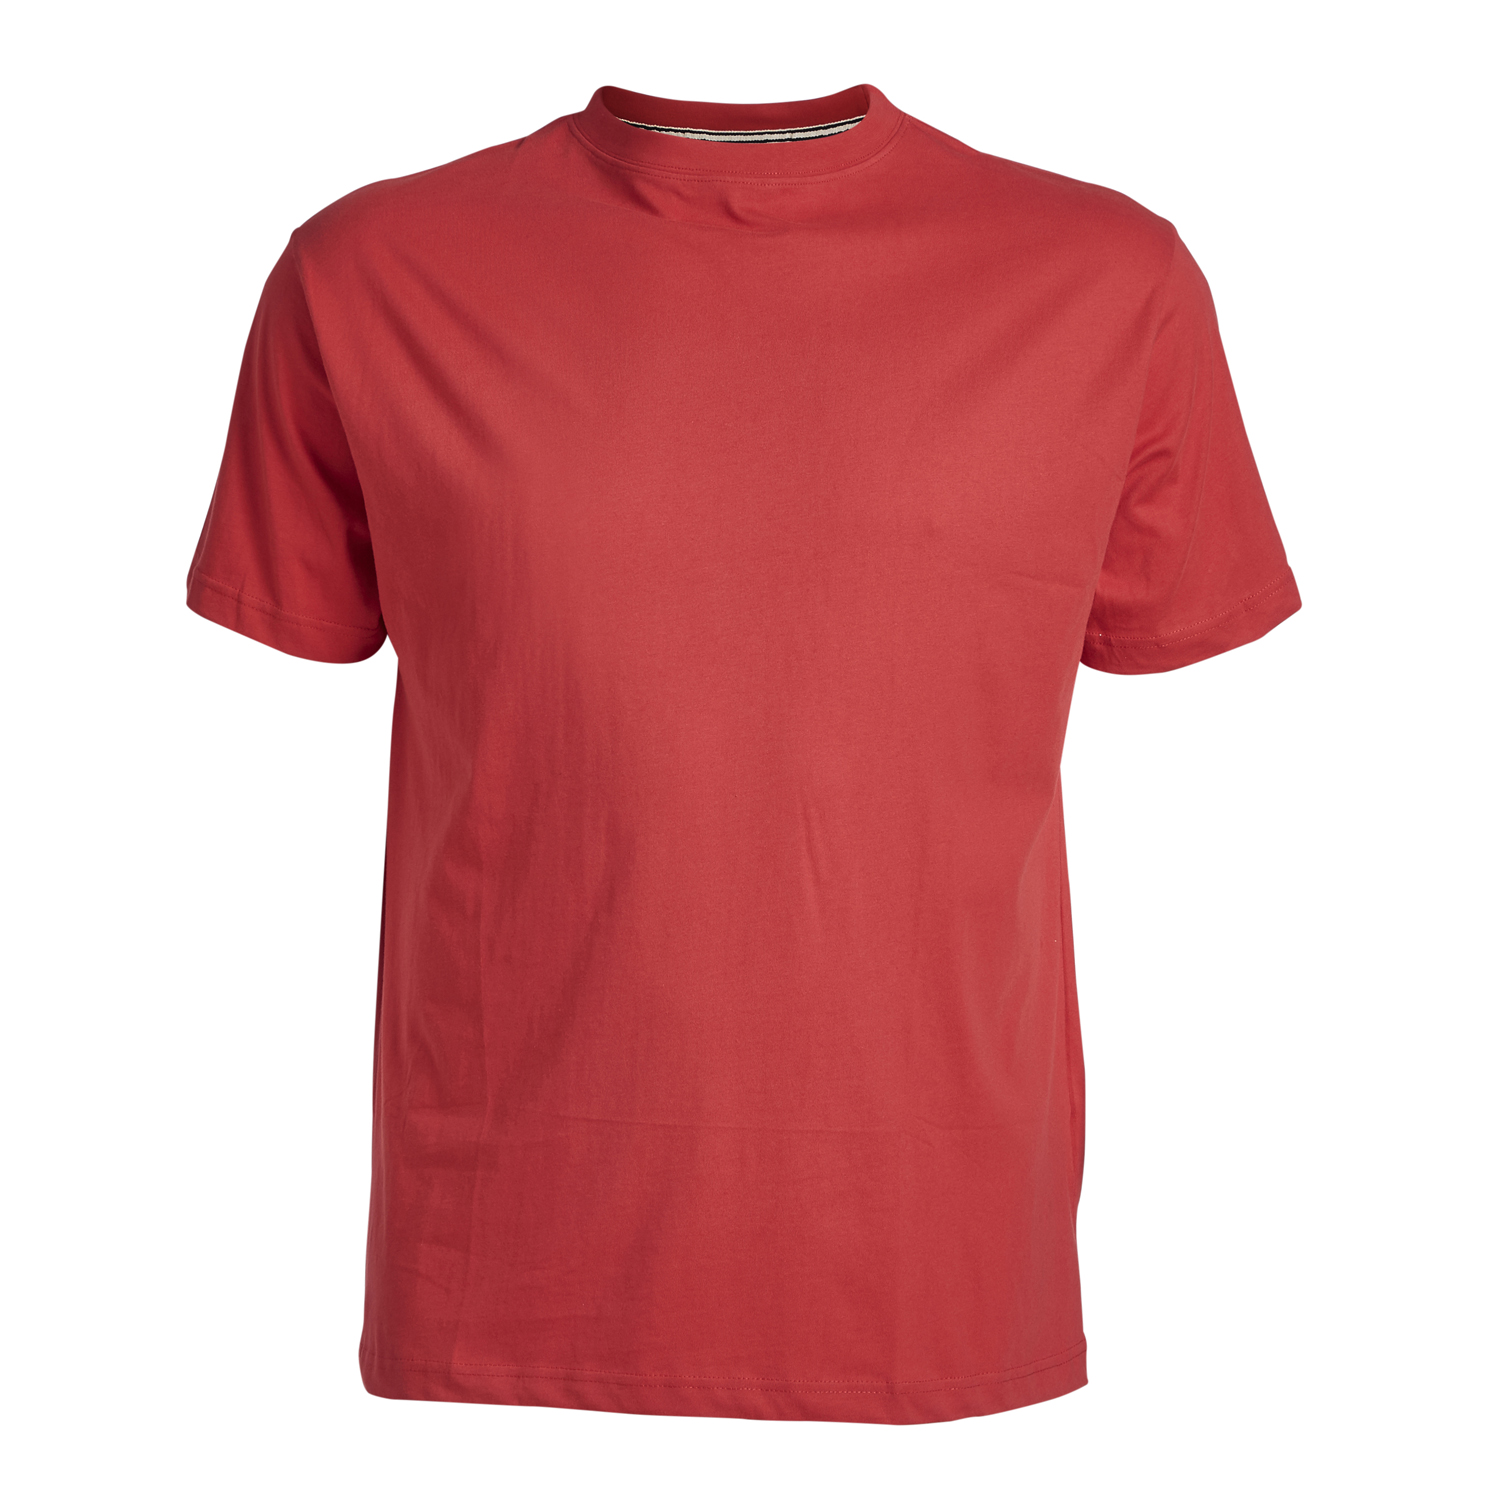 Rotes Basic-T-Shirt - Rundhals - North 56°4 bis 8XL